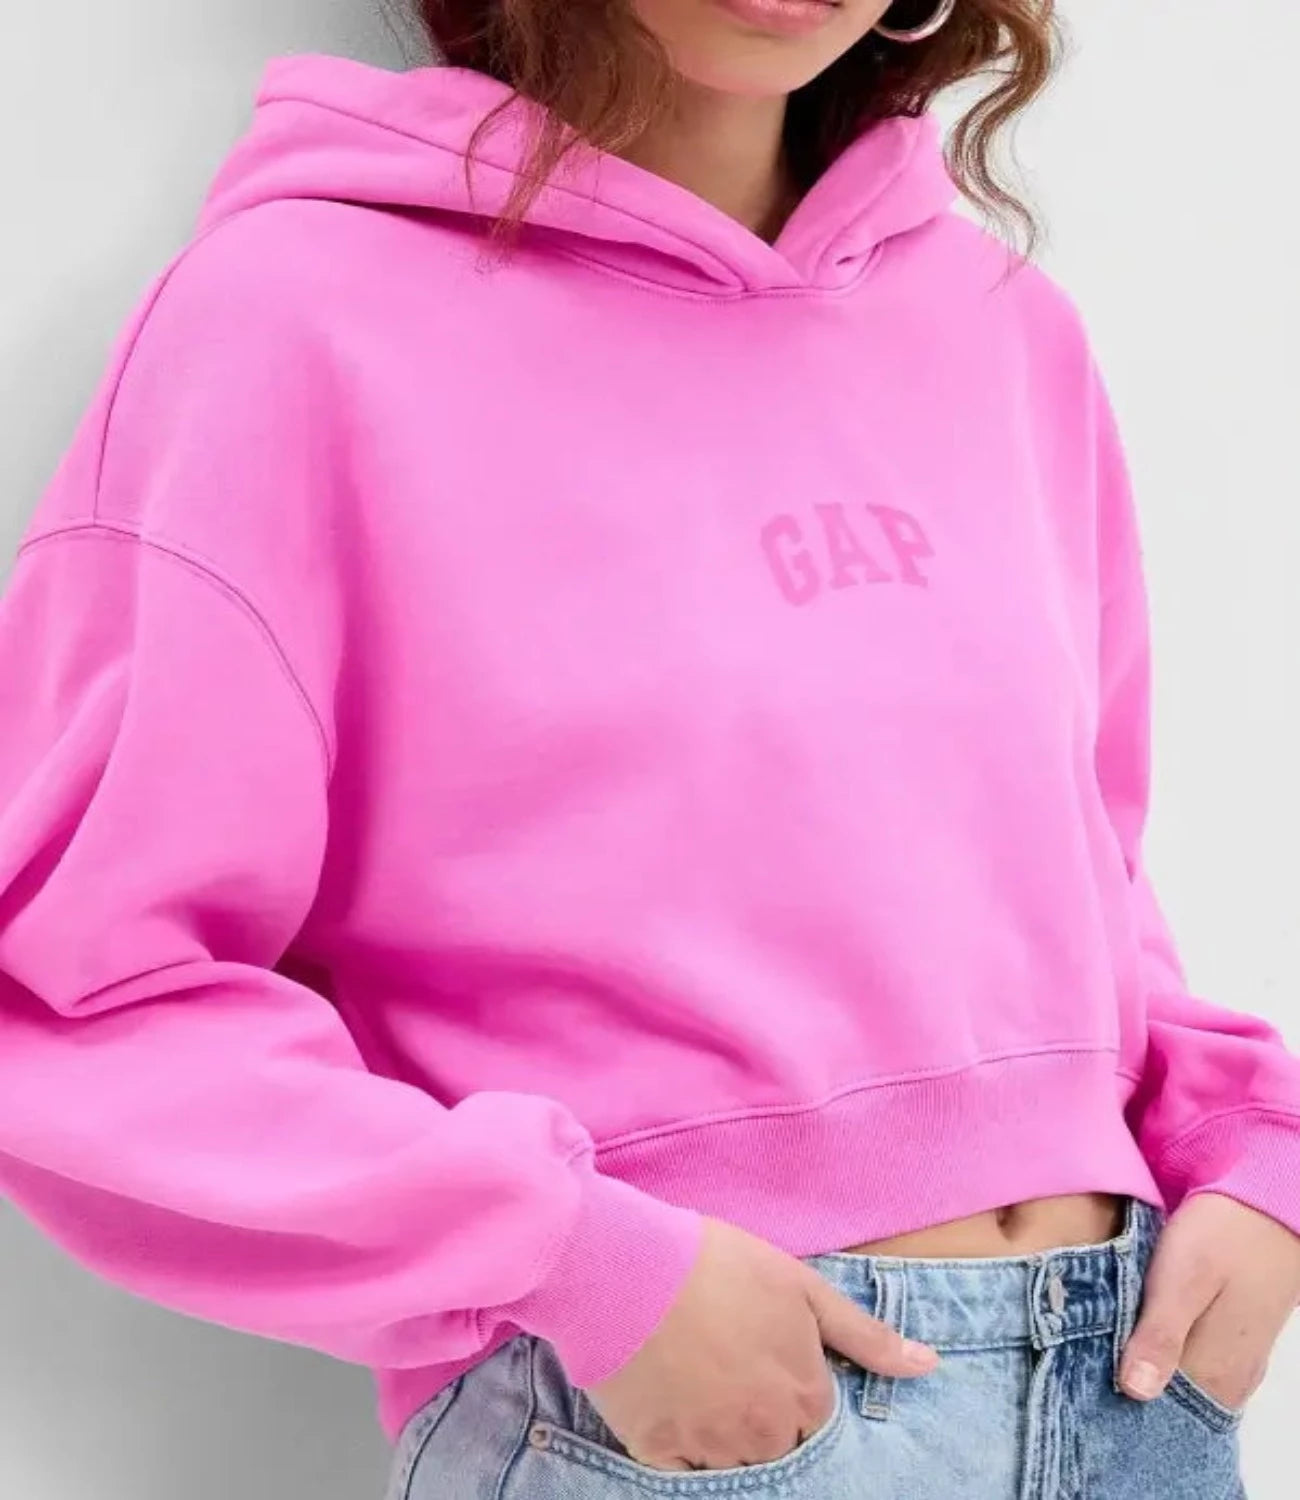 Project Gap Vintage Pink Hoodie